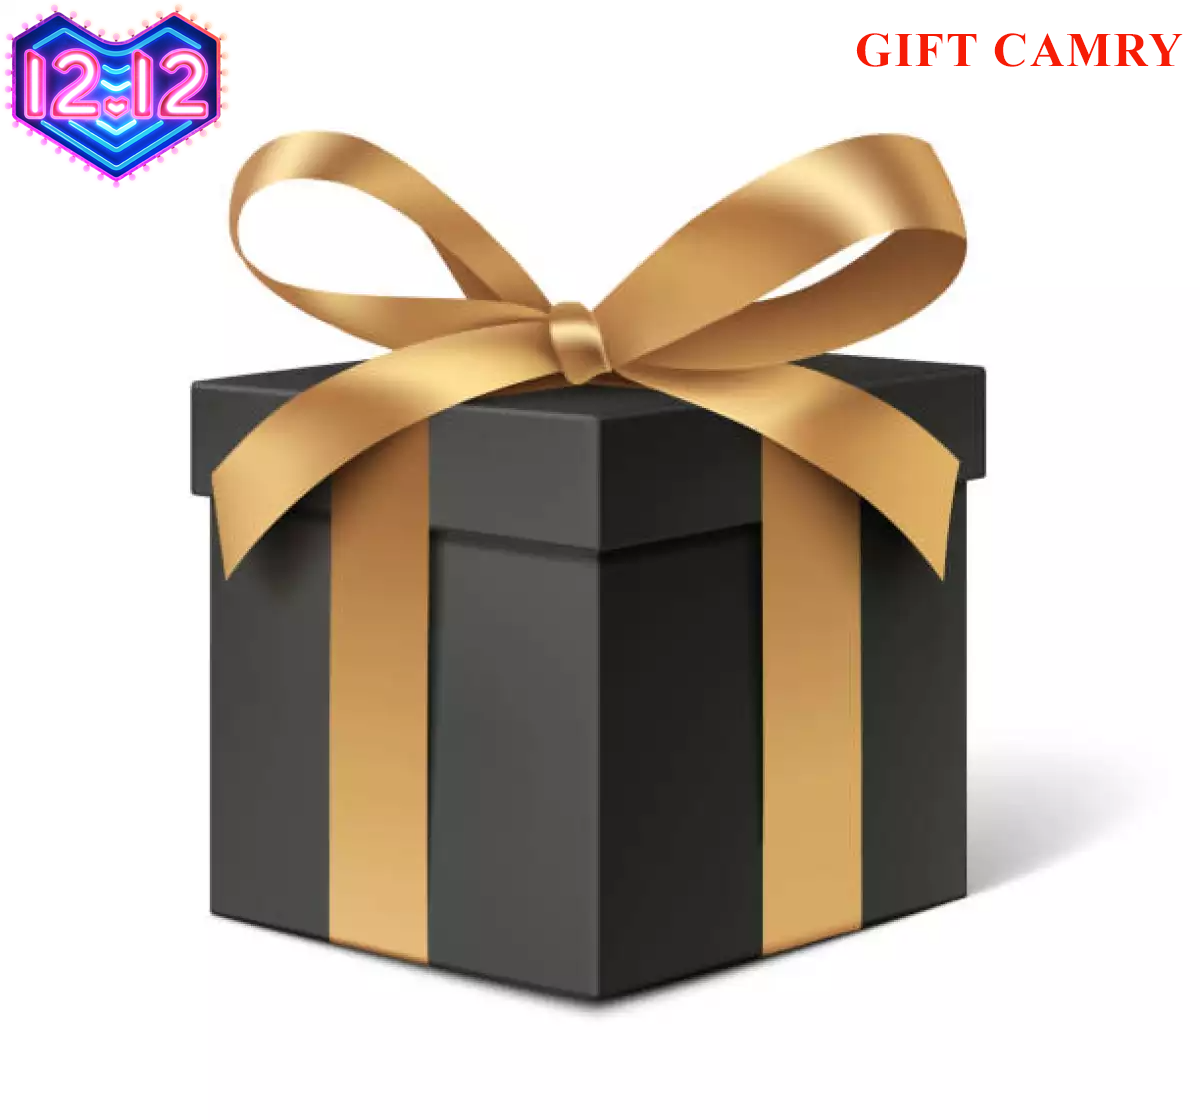 Gift Camry - Quà tặng bất ngờ của Cân Camry dành cho khách khi mua bất kí